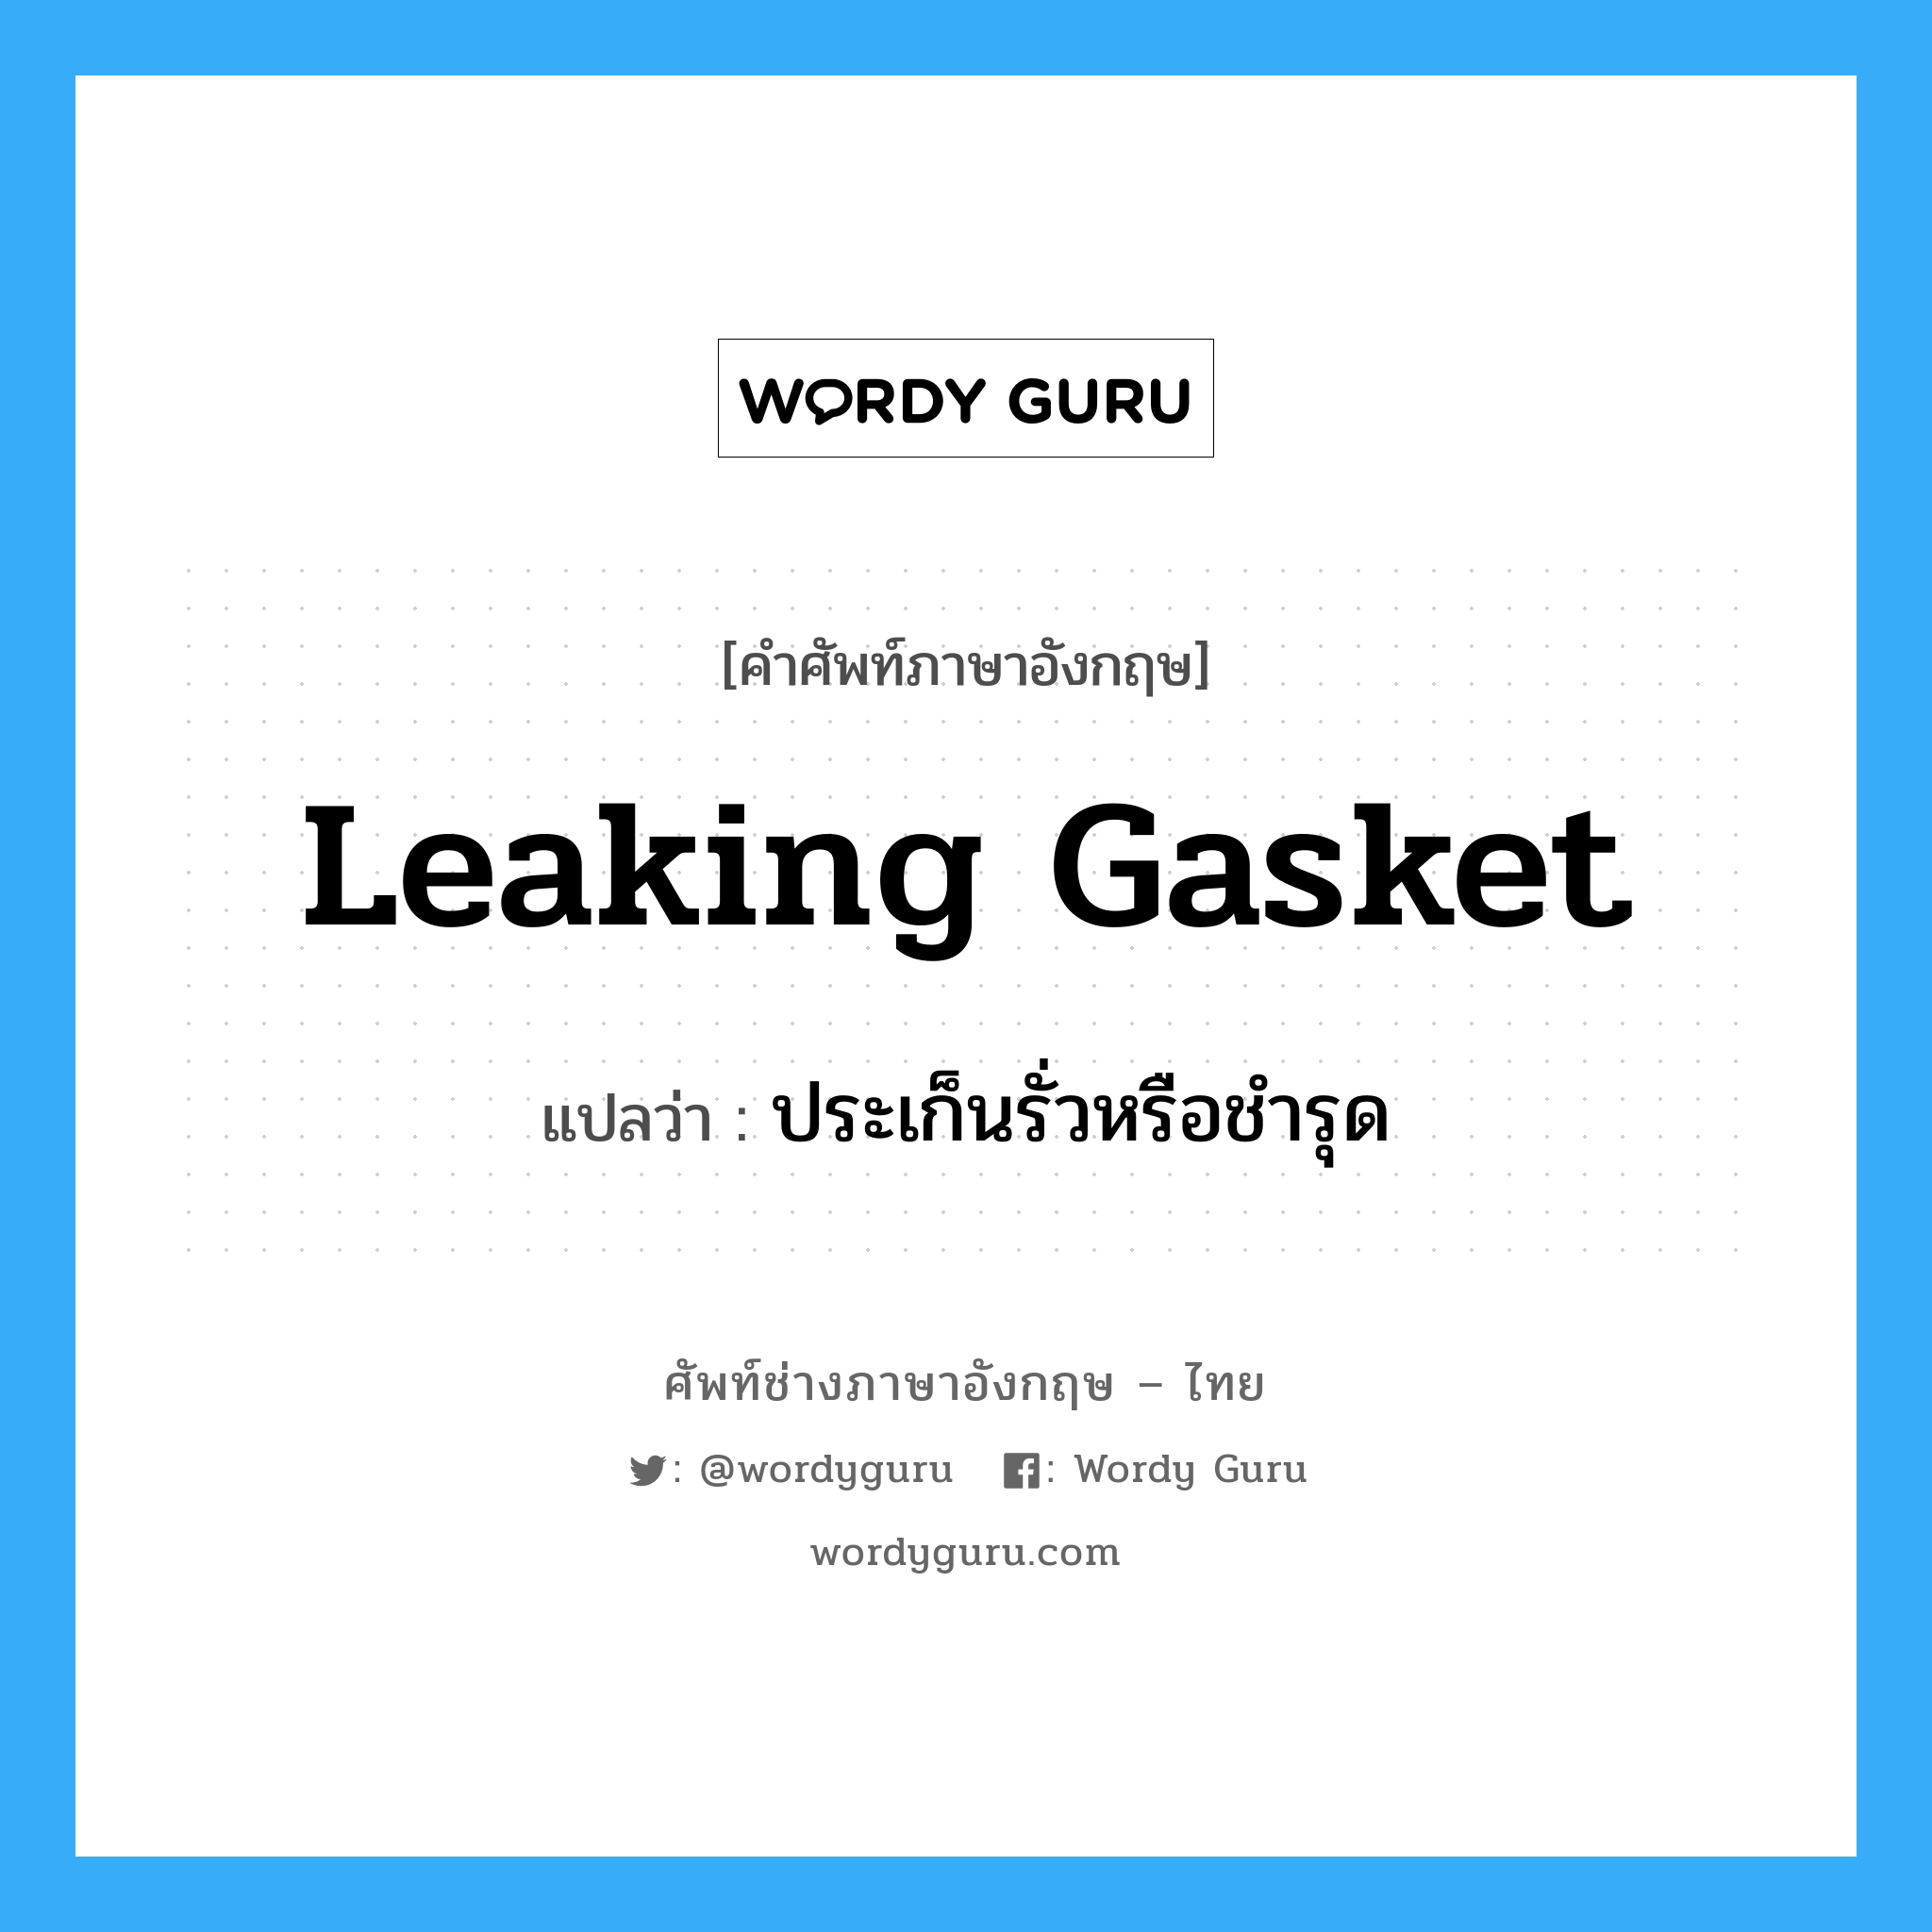 ประเก็นรั่วหรือชำรุด ภาษาอังกฤษ?, คำศัพท์ช่างภาษาอังกฤษ - ไทย ประเก็นรั่วหรือชำรุด คำศัพท์ภาษาอังกฤษ ประเก็นรั่วหรือชำรุด แปลว่า leaking gasket